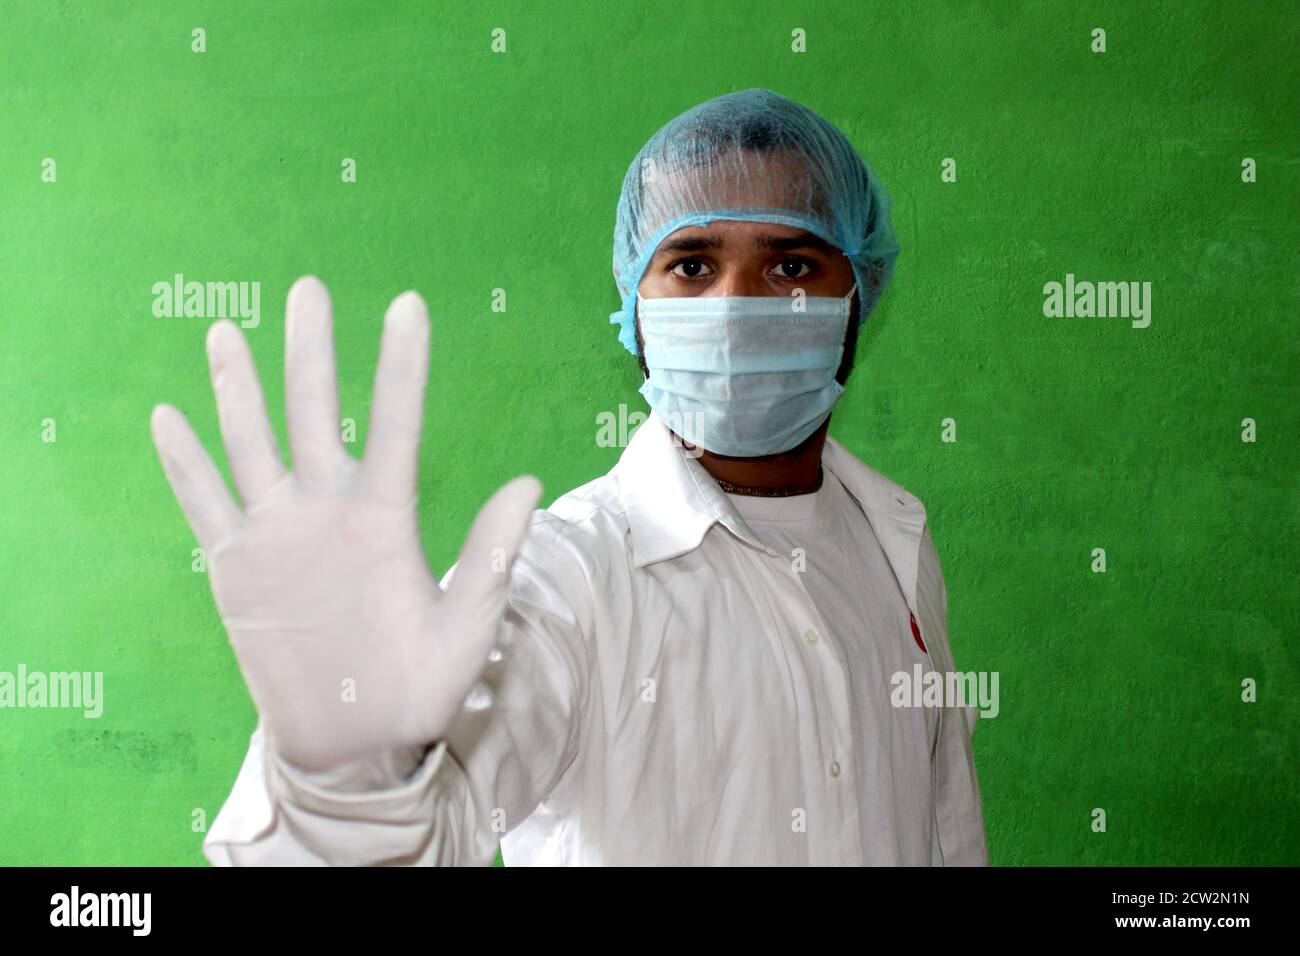 Un jeune médecin en uniforme médical avec un masque facial protecteur et une main gantée montrant un signe d'arrêt - Stop corona virus, Covid-19 concept. Banque D'Images